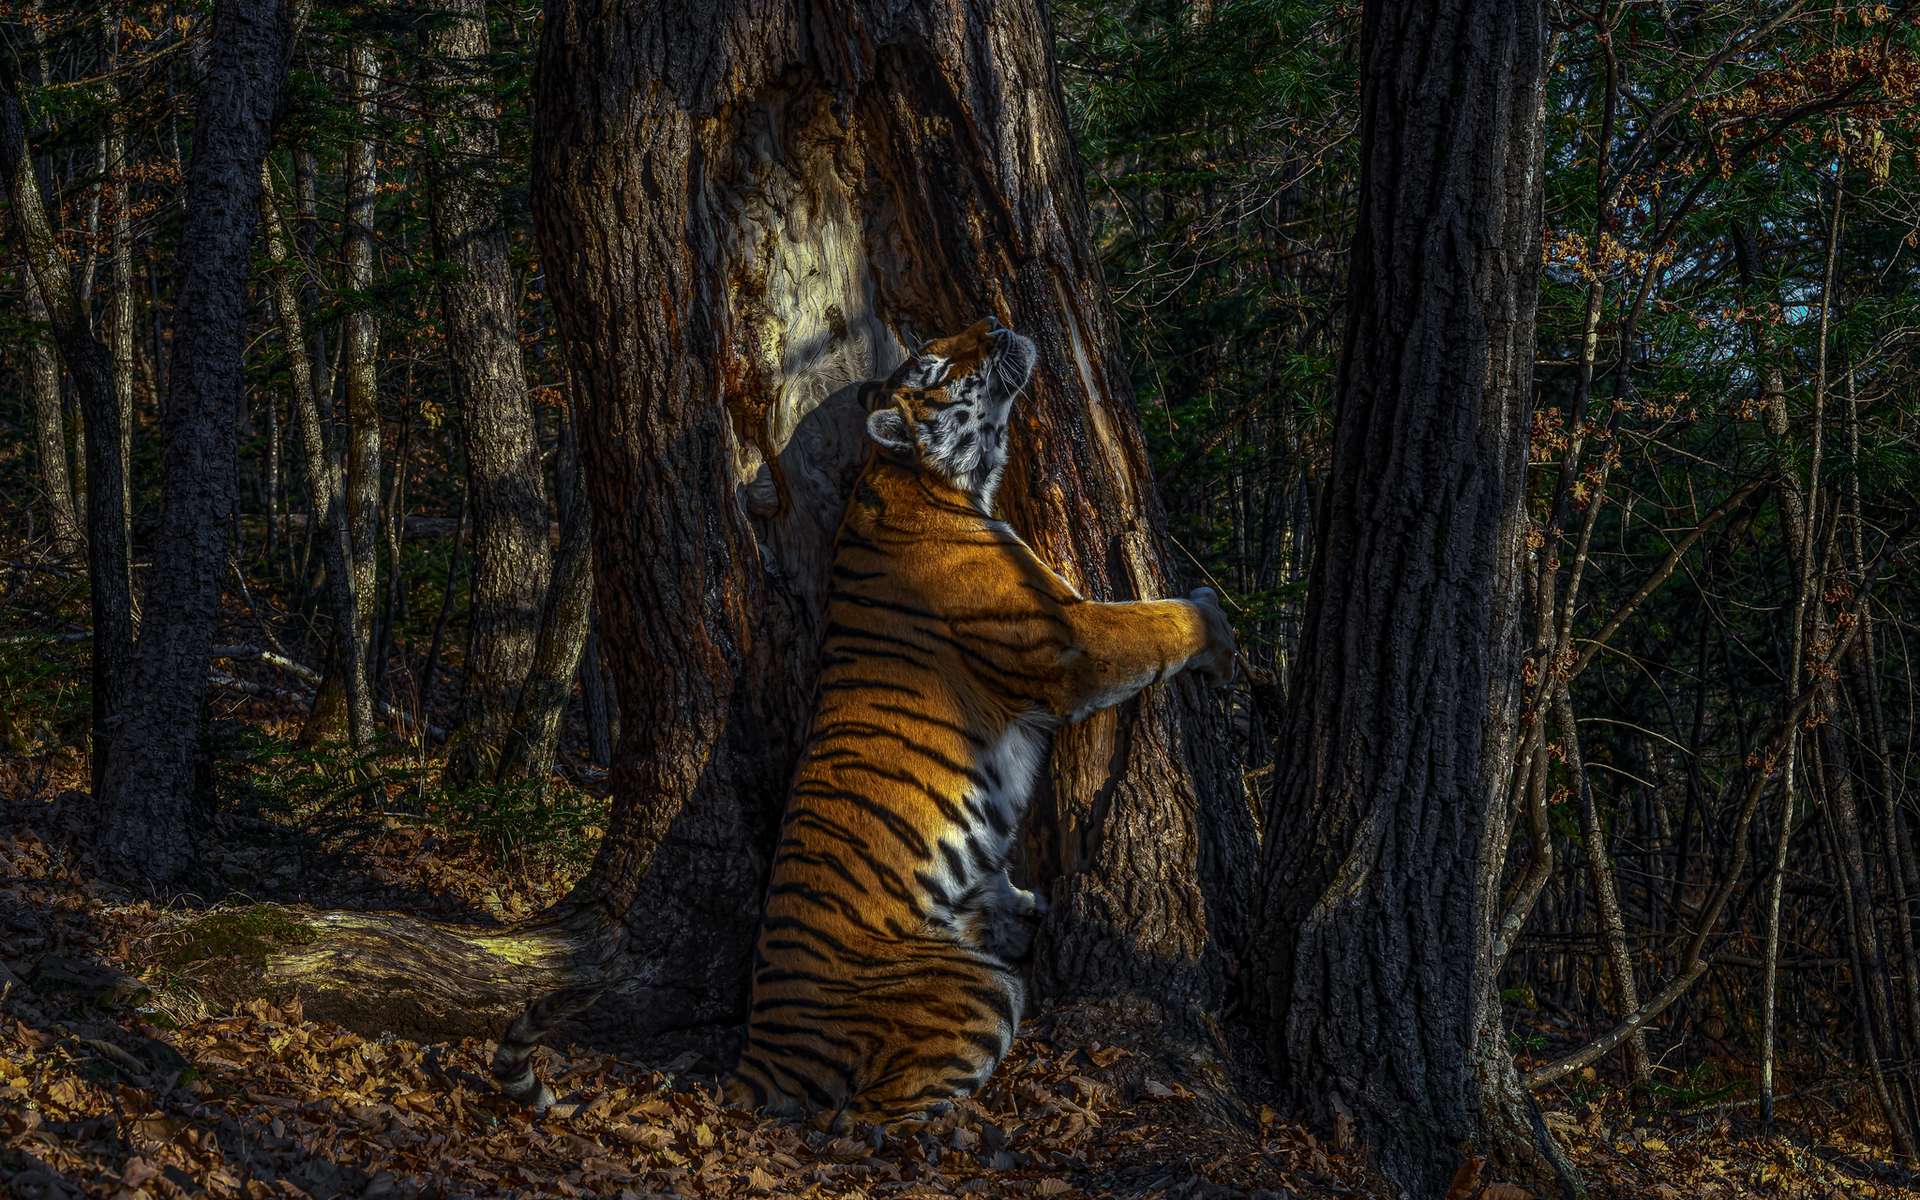 Animaux « L’étreinte » d’un tigre de Sibérie et autres magnifiques photos d’animaux sauvages